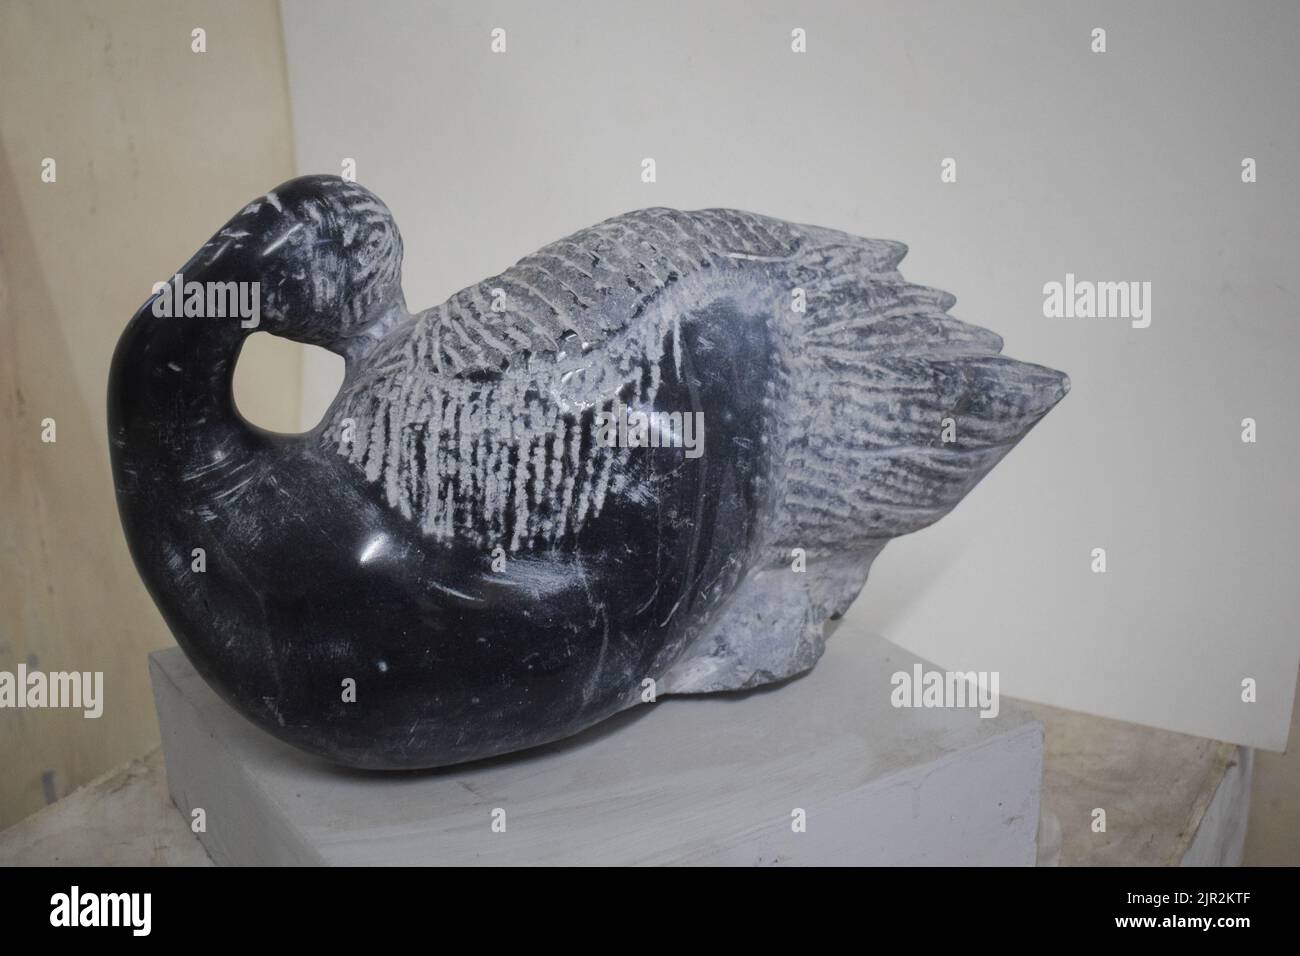 Sculpture de cygne en pierre noire Banque D'Images